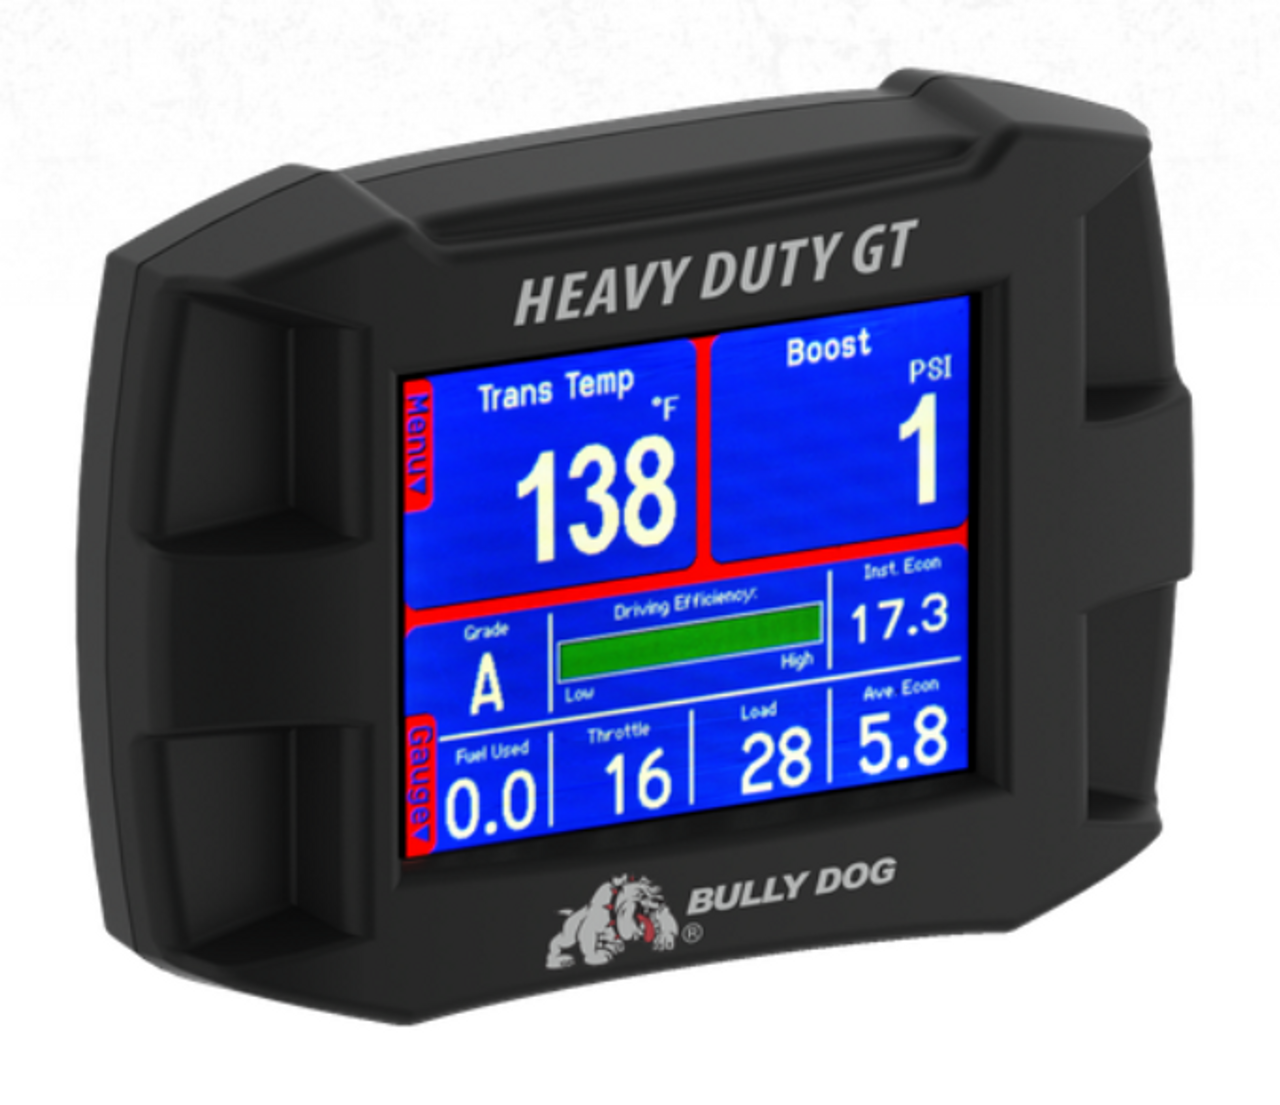 Bully Dog Heavy Duty GT Monitor (46500) Main View